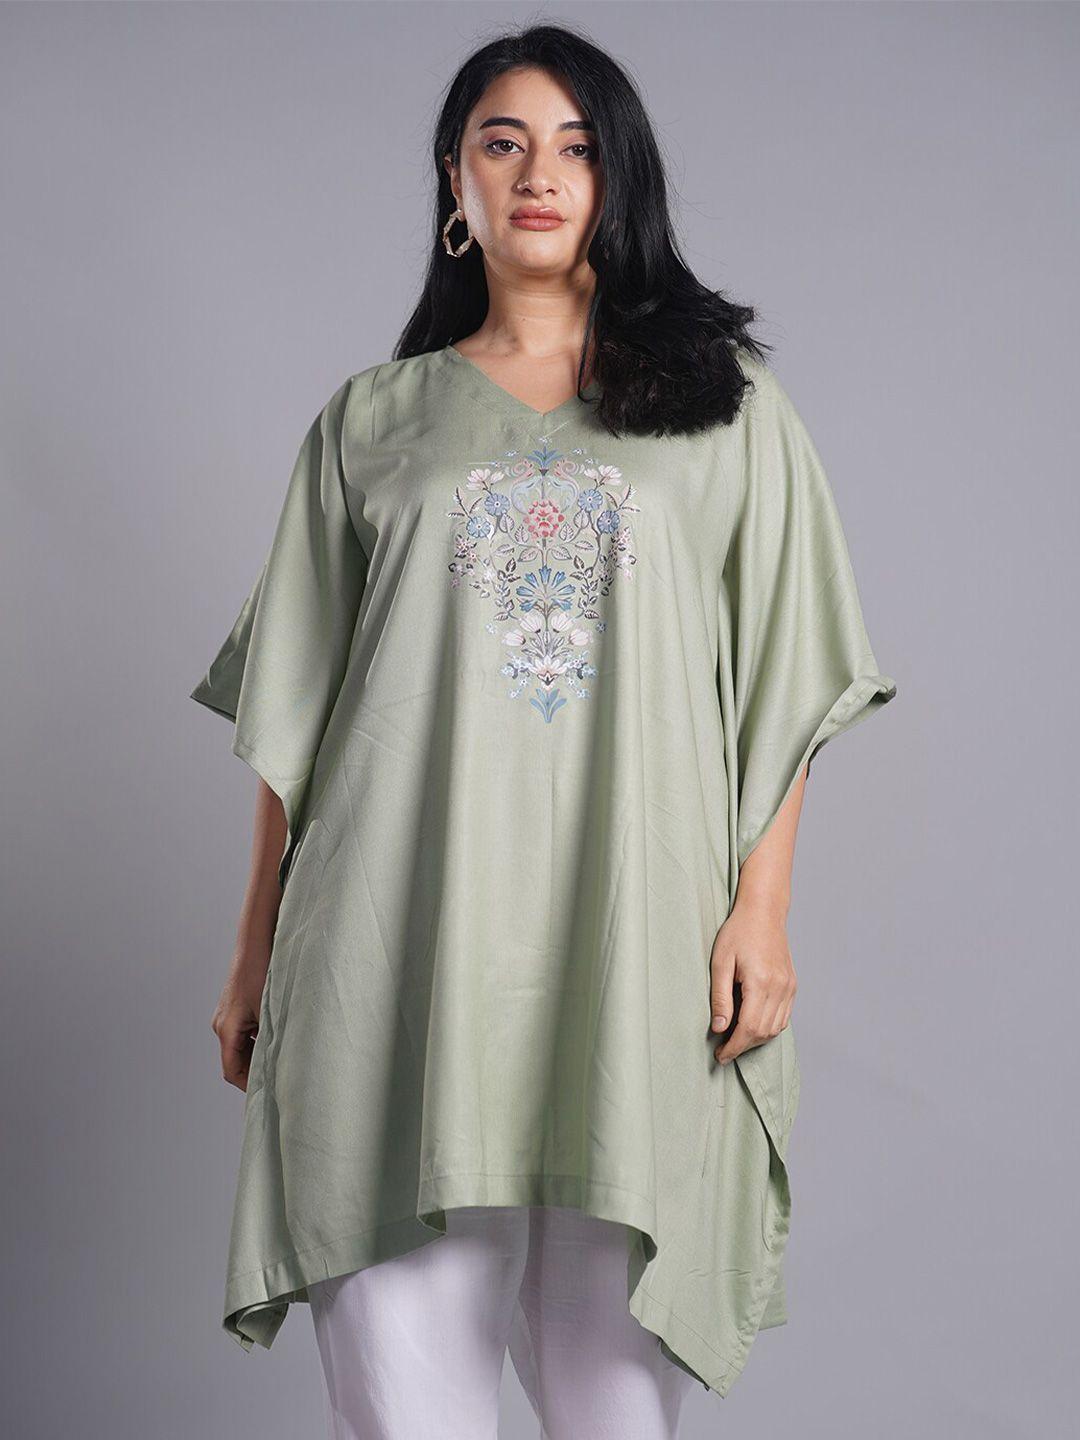 letsdressup-olive-green-floral-printed-v-neck-flared-sleeves-kaftan-kurti